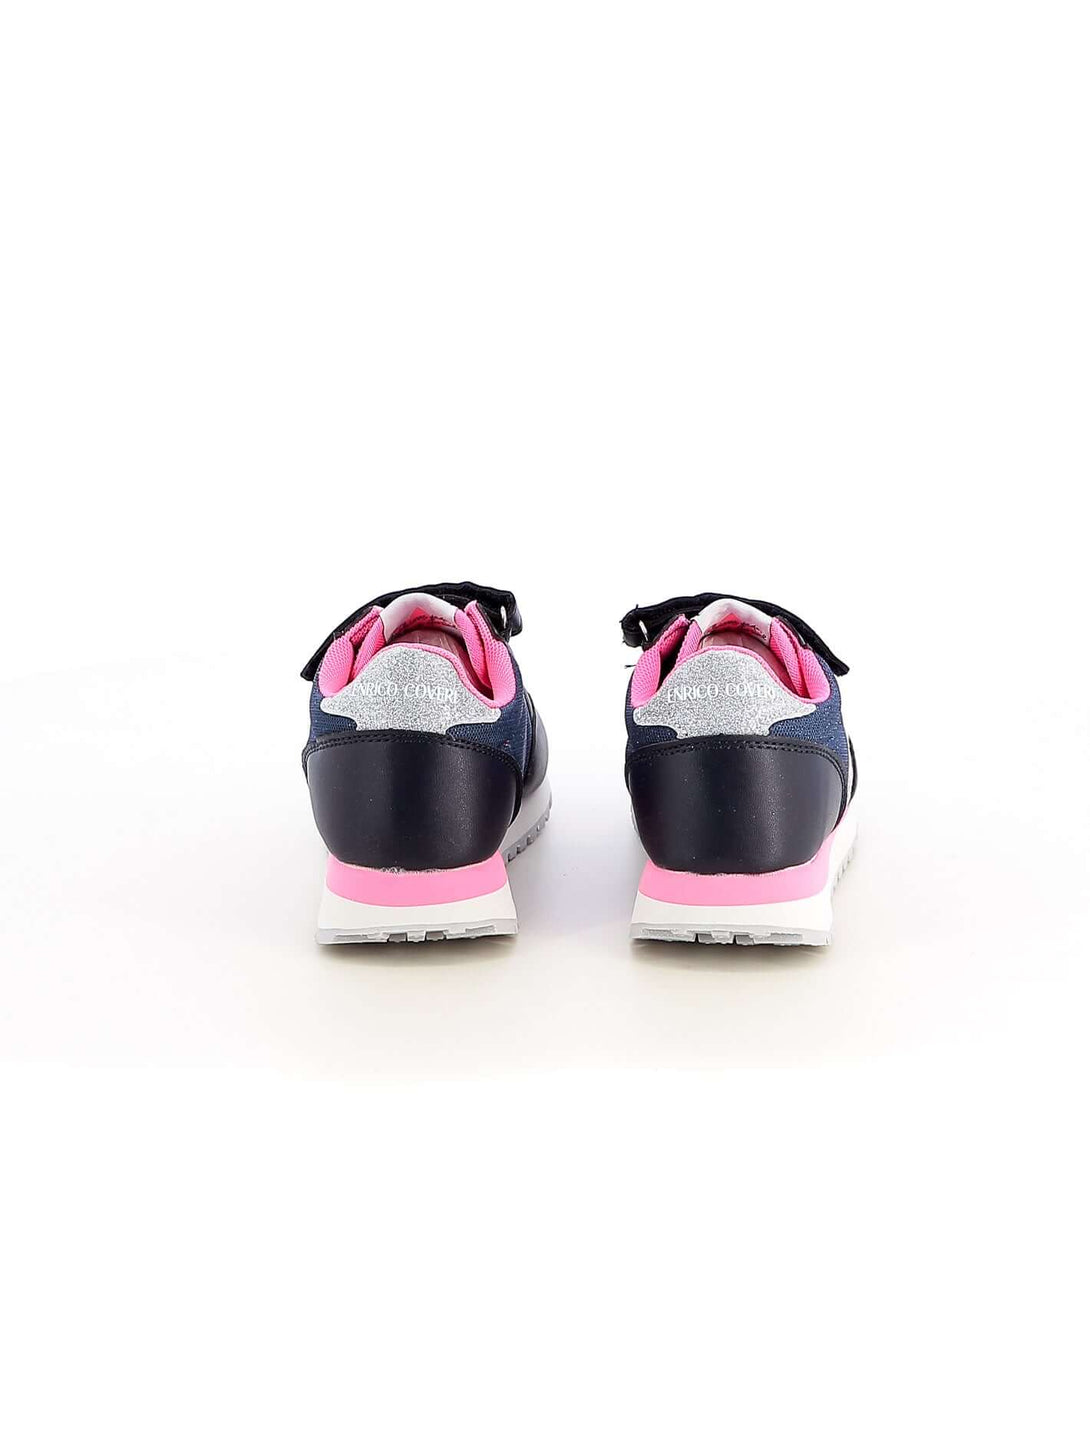 Sneakers con strappi bambina ENRICO COVERI ECK315207 blu | Costa Superstore